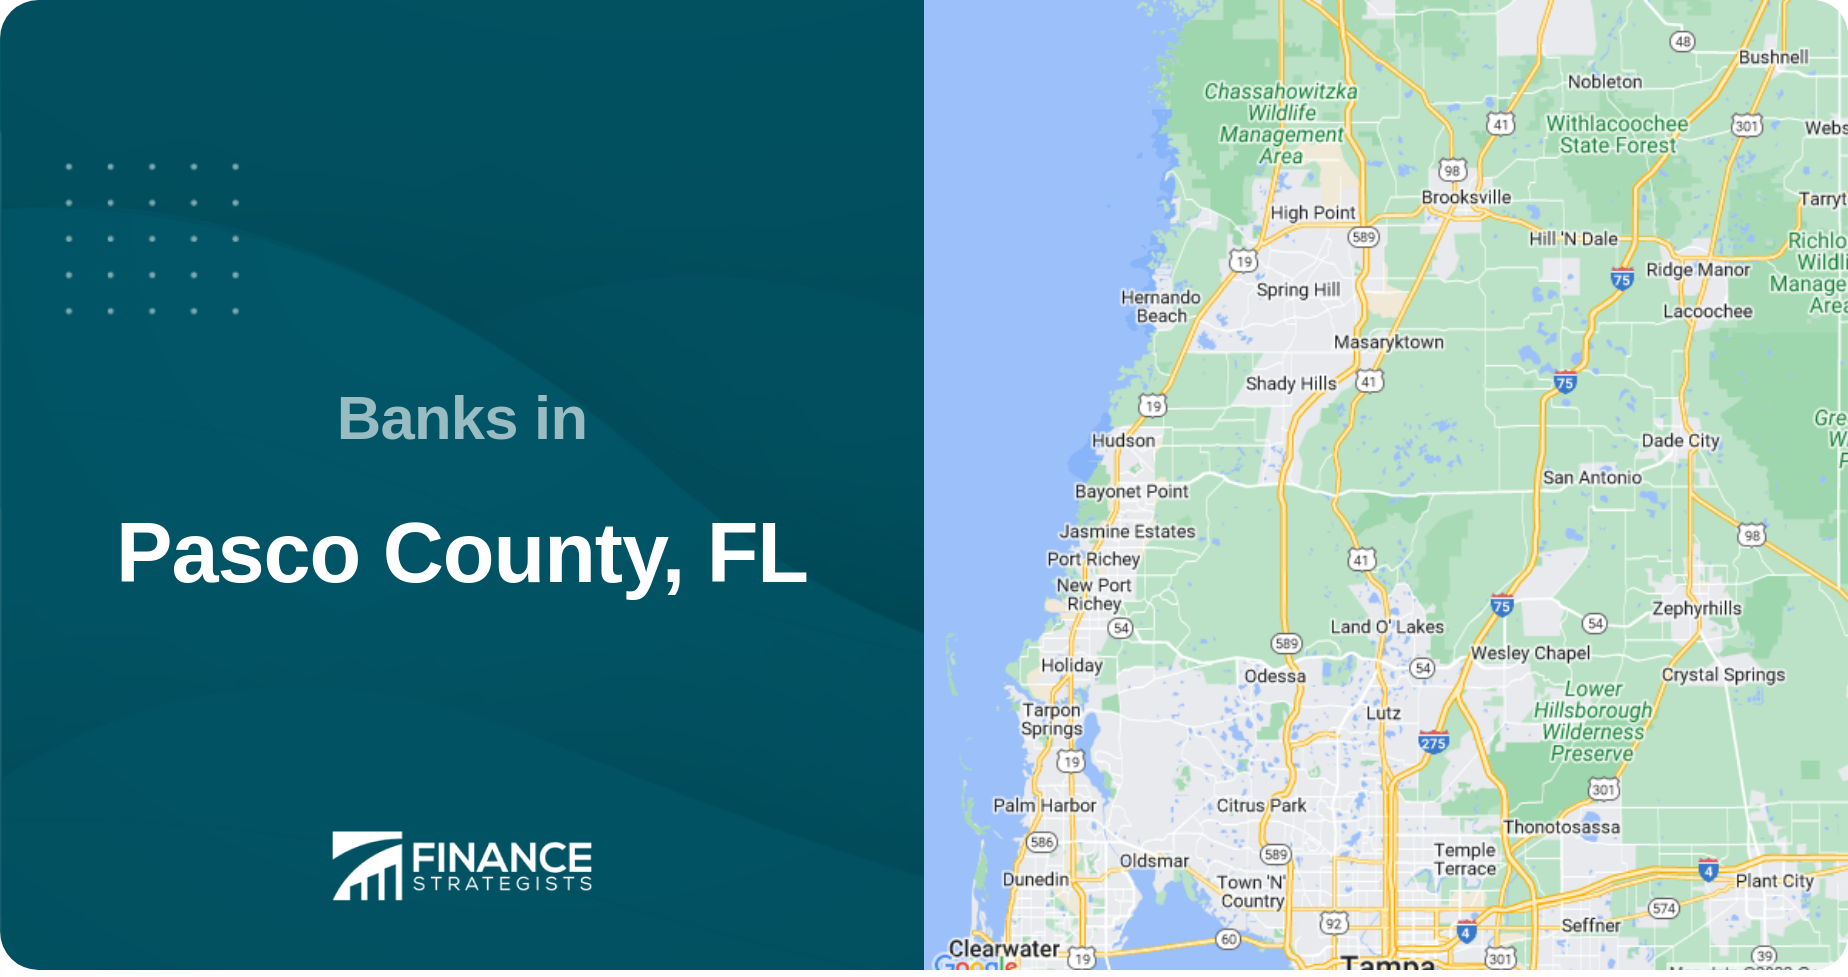 Banks in Pasco County, FL